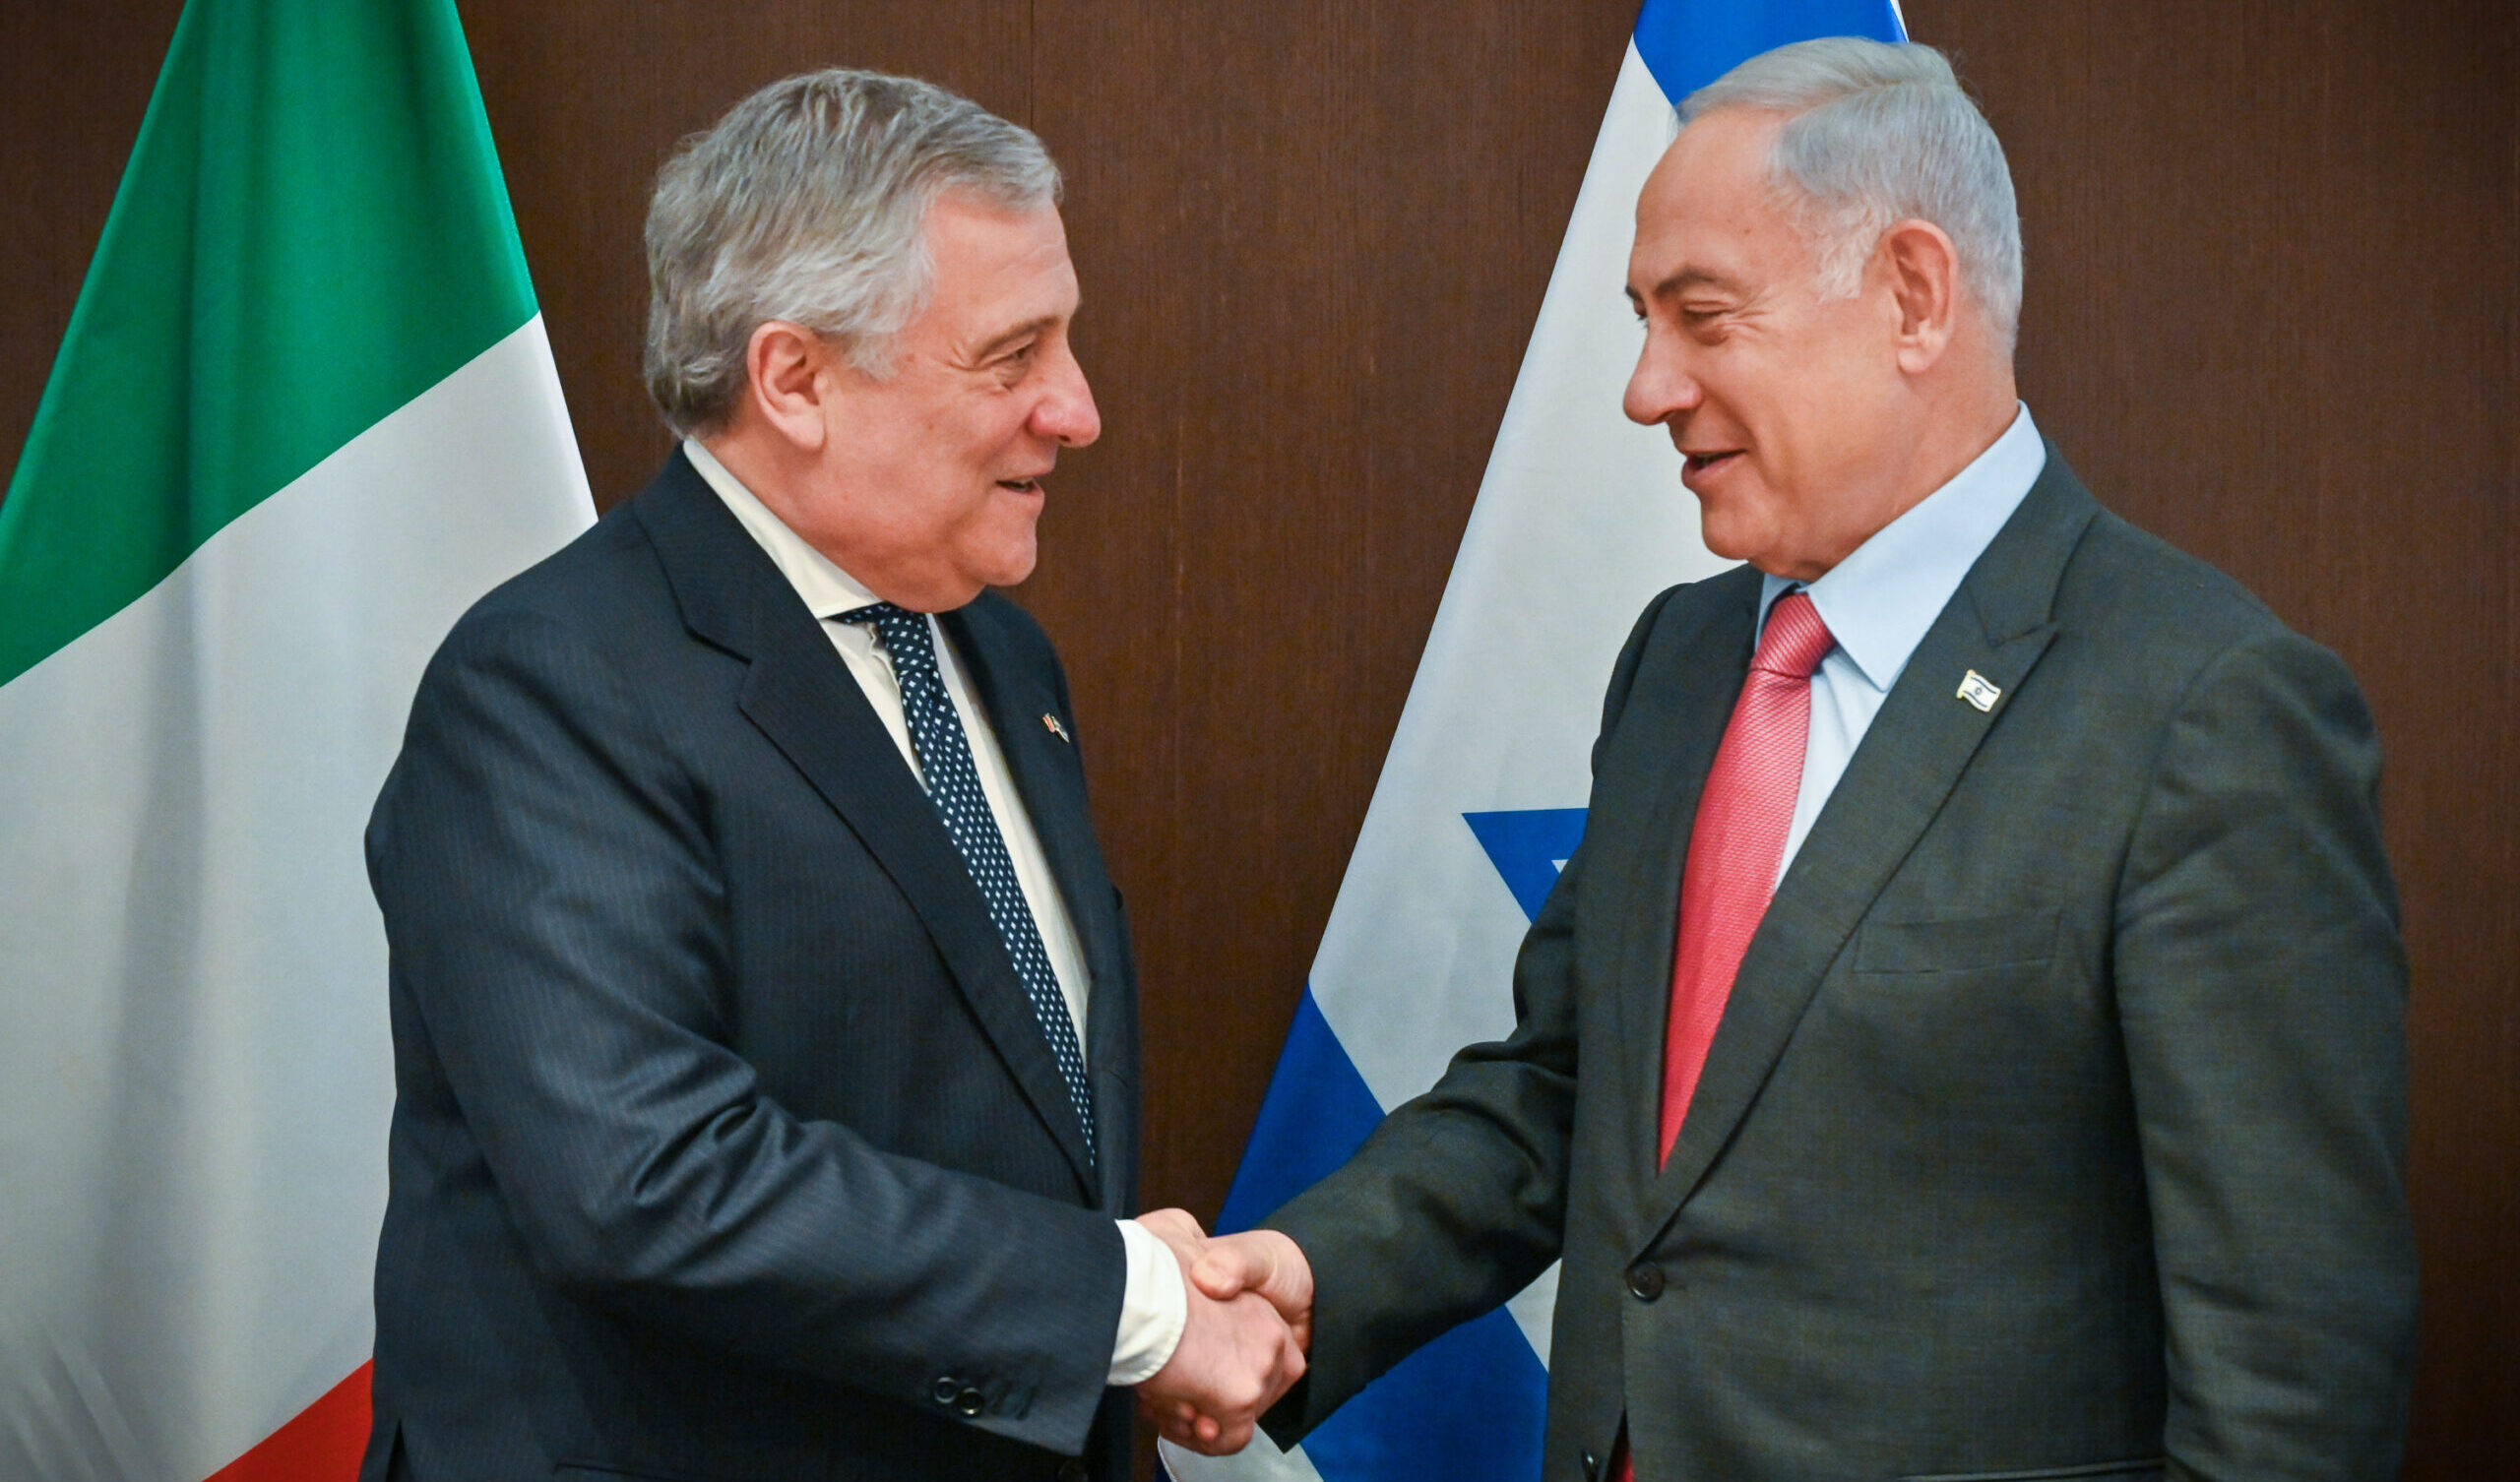 "Riconoscere la Palestina peggiora la situazione": non lo dice Netanyahu, ma Antonio Tajani